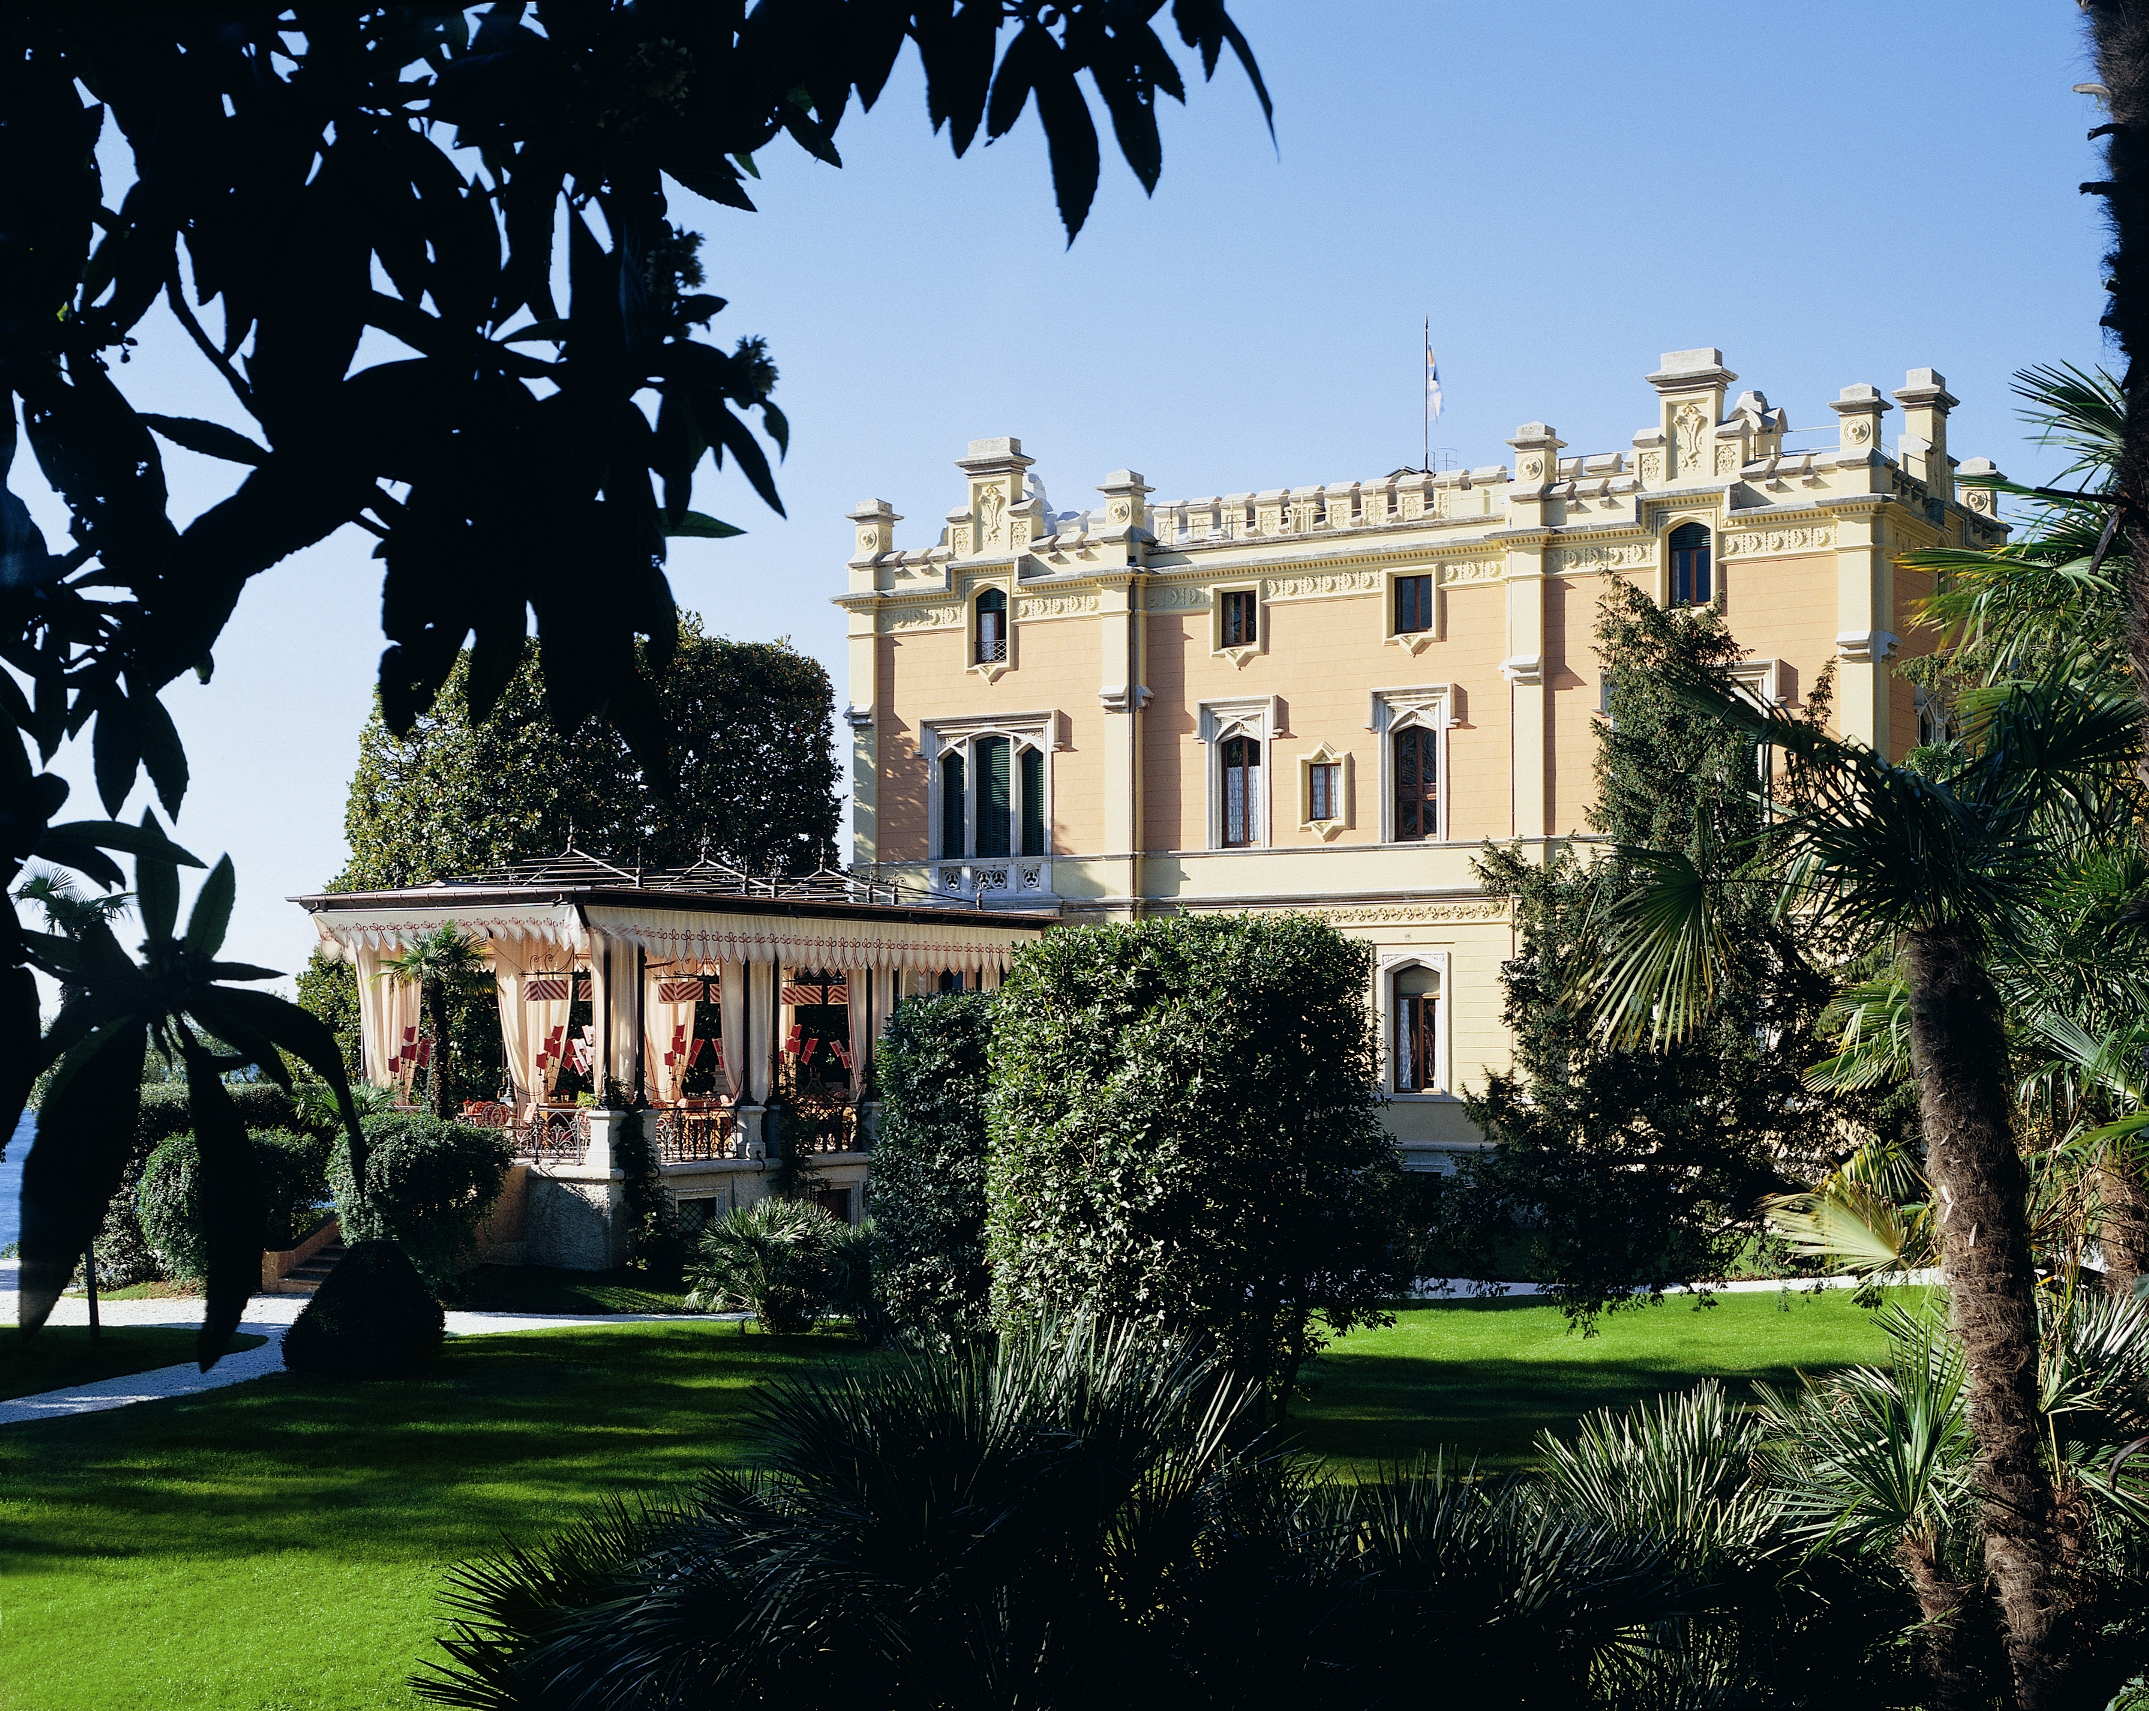 Places: The Grand Hotel Villa Feltrinelli